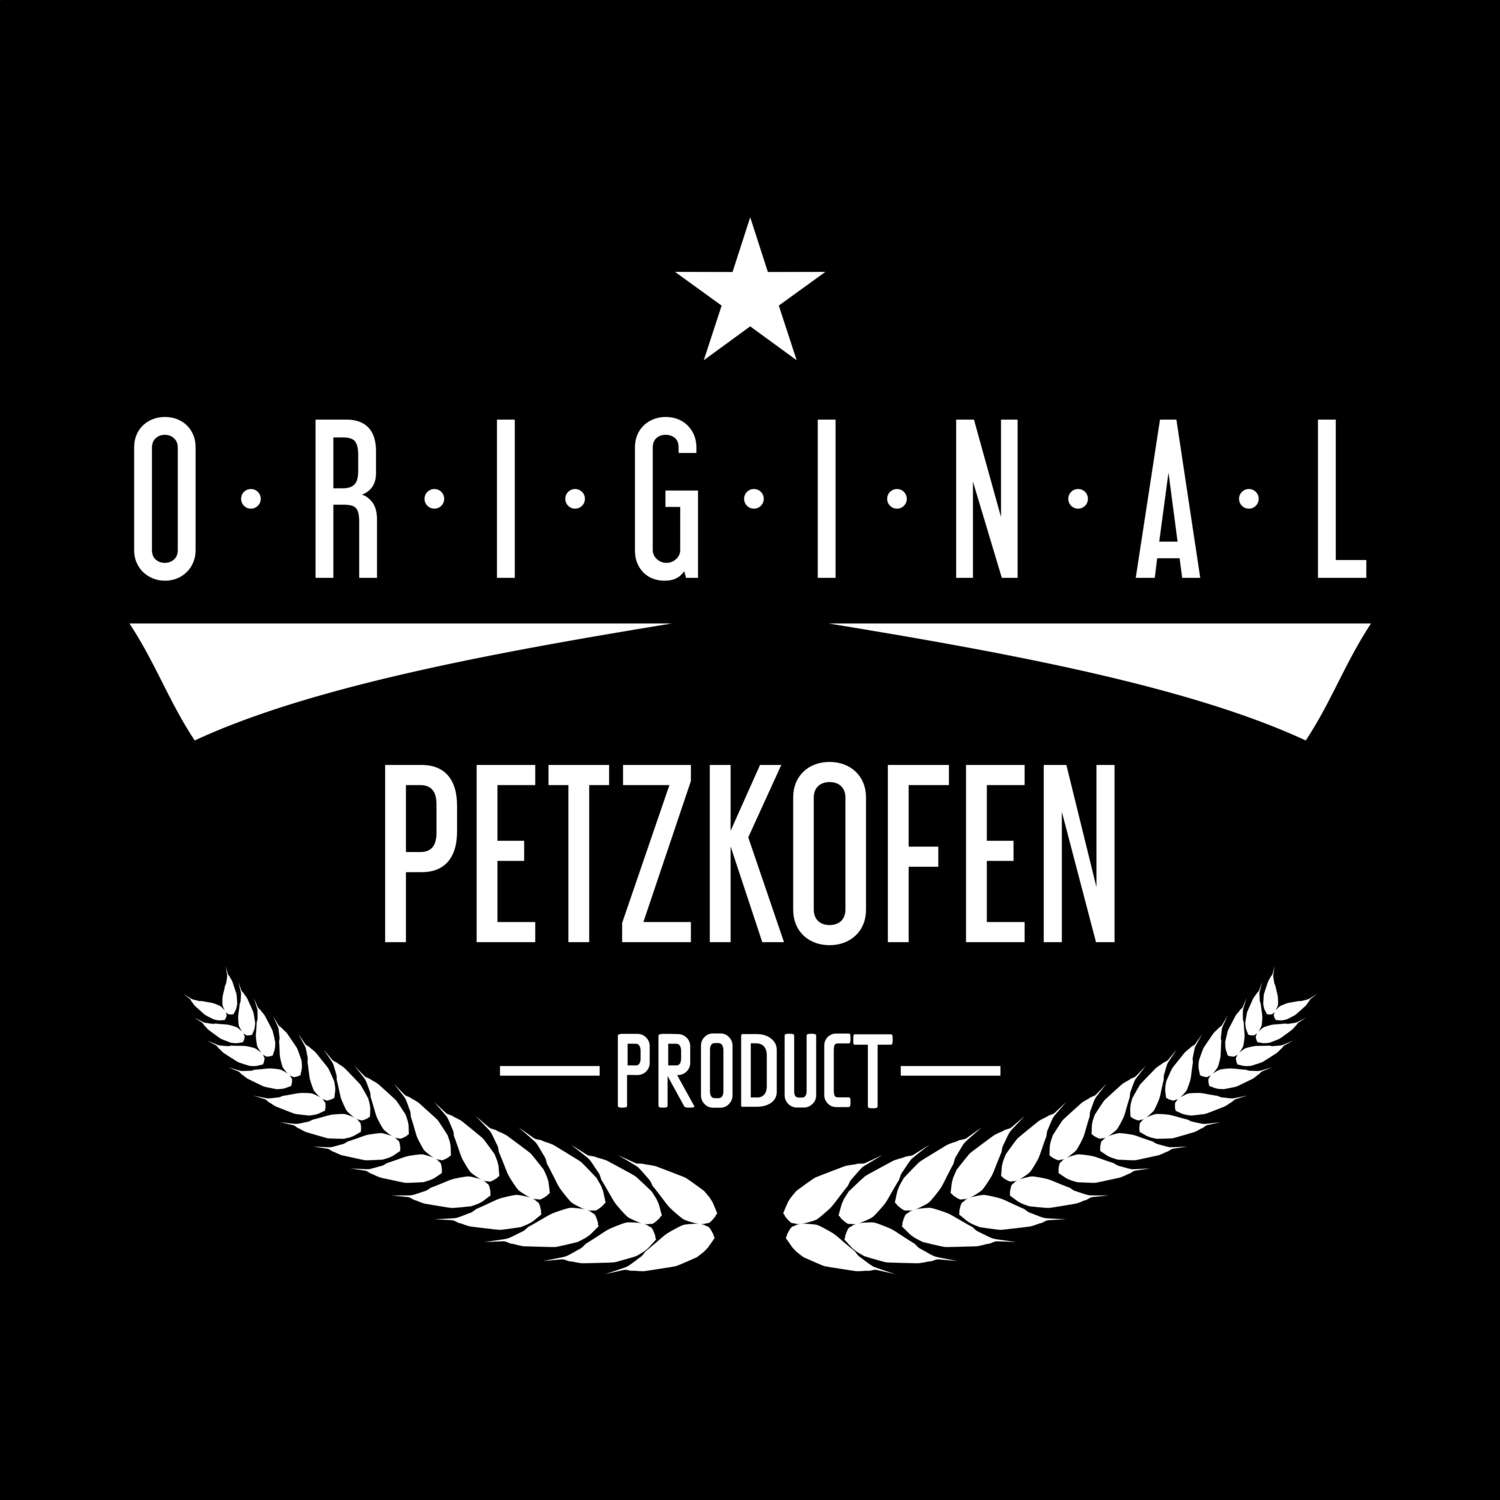 Petzkofen T-Shirt »Original Product«